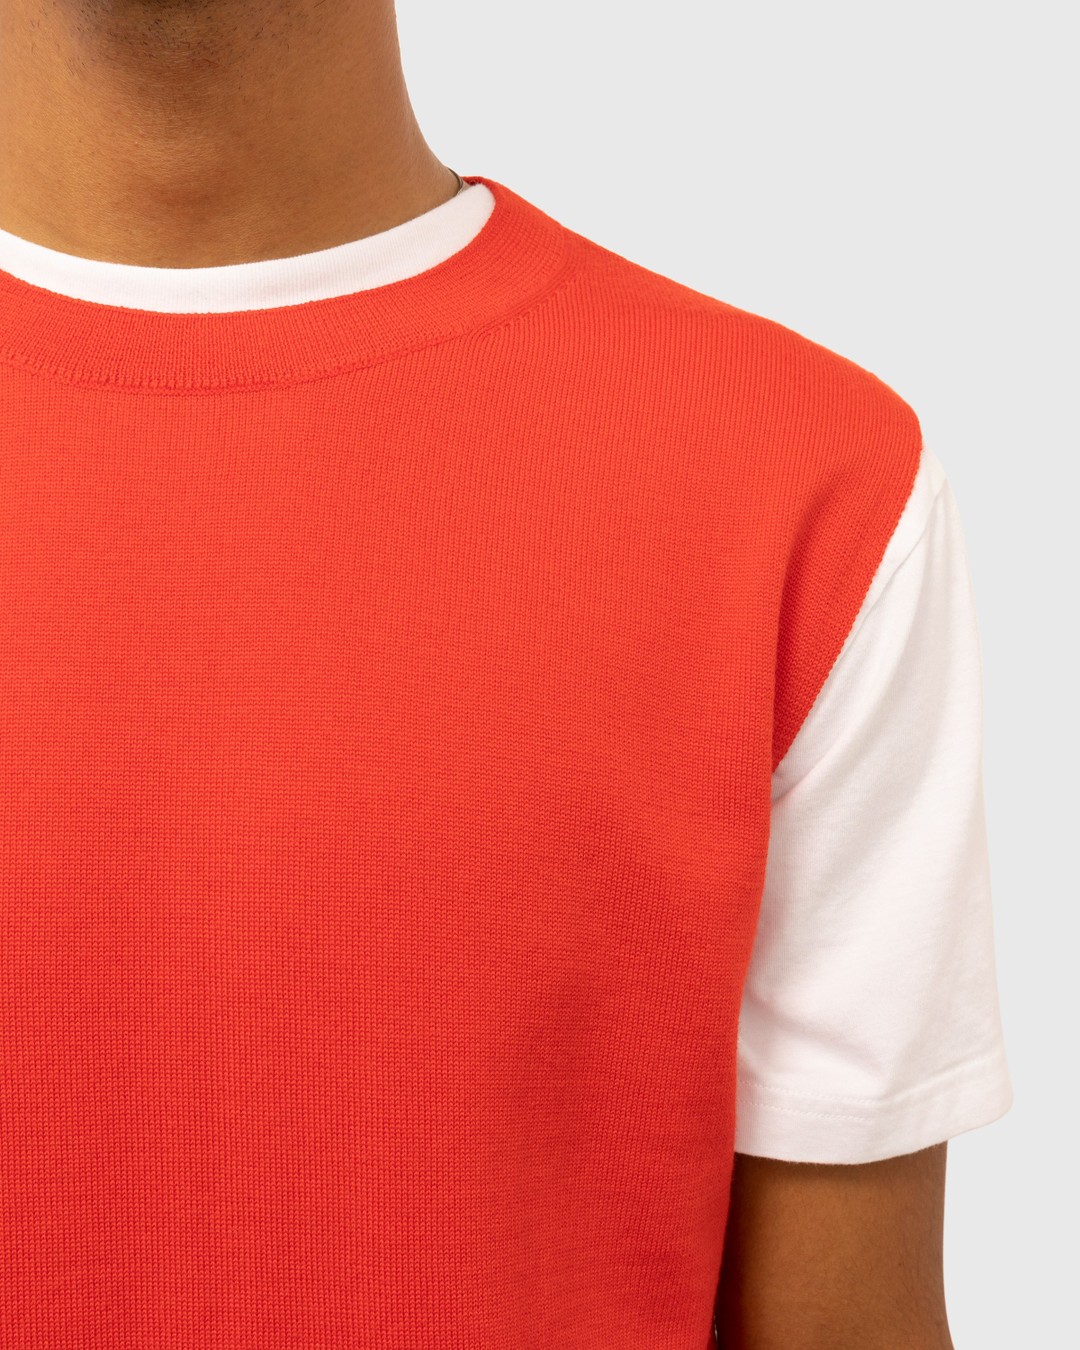 Dries van Noten – Neptune Sweater Vest Red - Knitwear - Red - Image 5